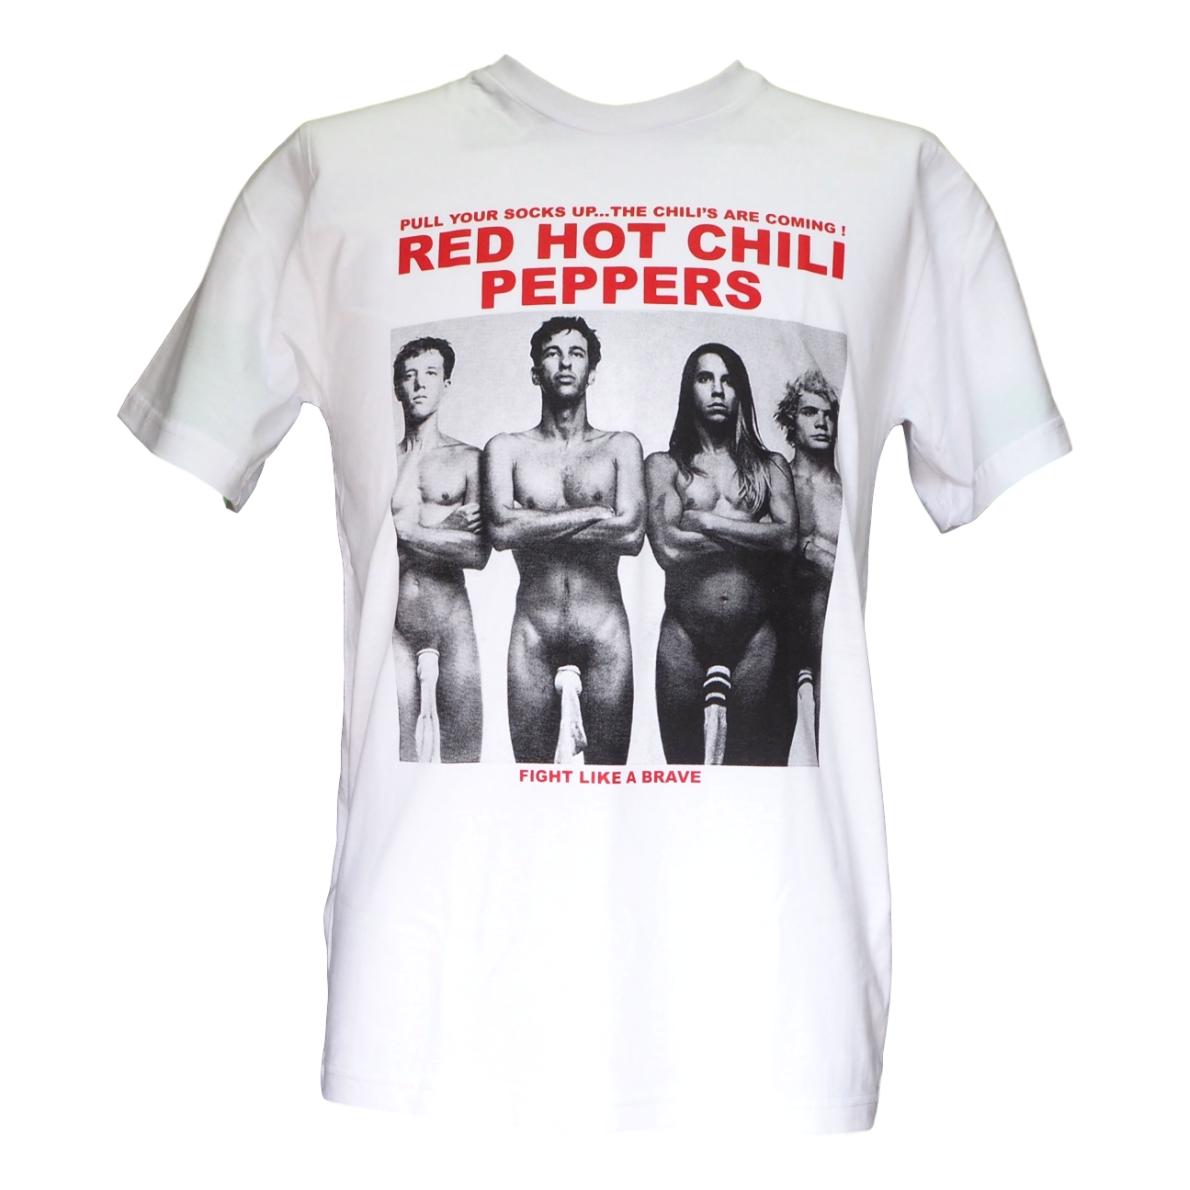 送料無料 レッド・ホット・チリ・ペッパーズ Red Hot Chili Peppers プリント Tシャツ ROCK ロック Tシャツ バンド Tシャツ レッチリ レッドホットチリペッパーズ サマソニ